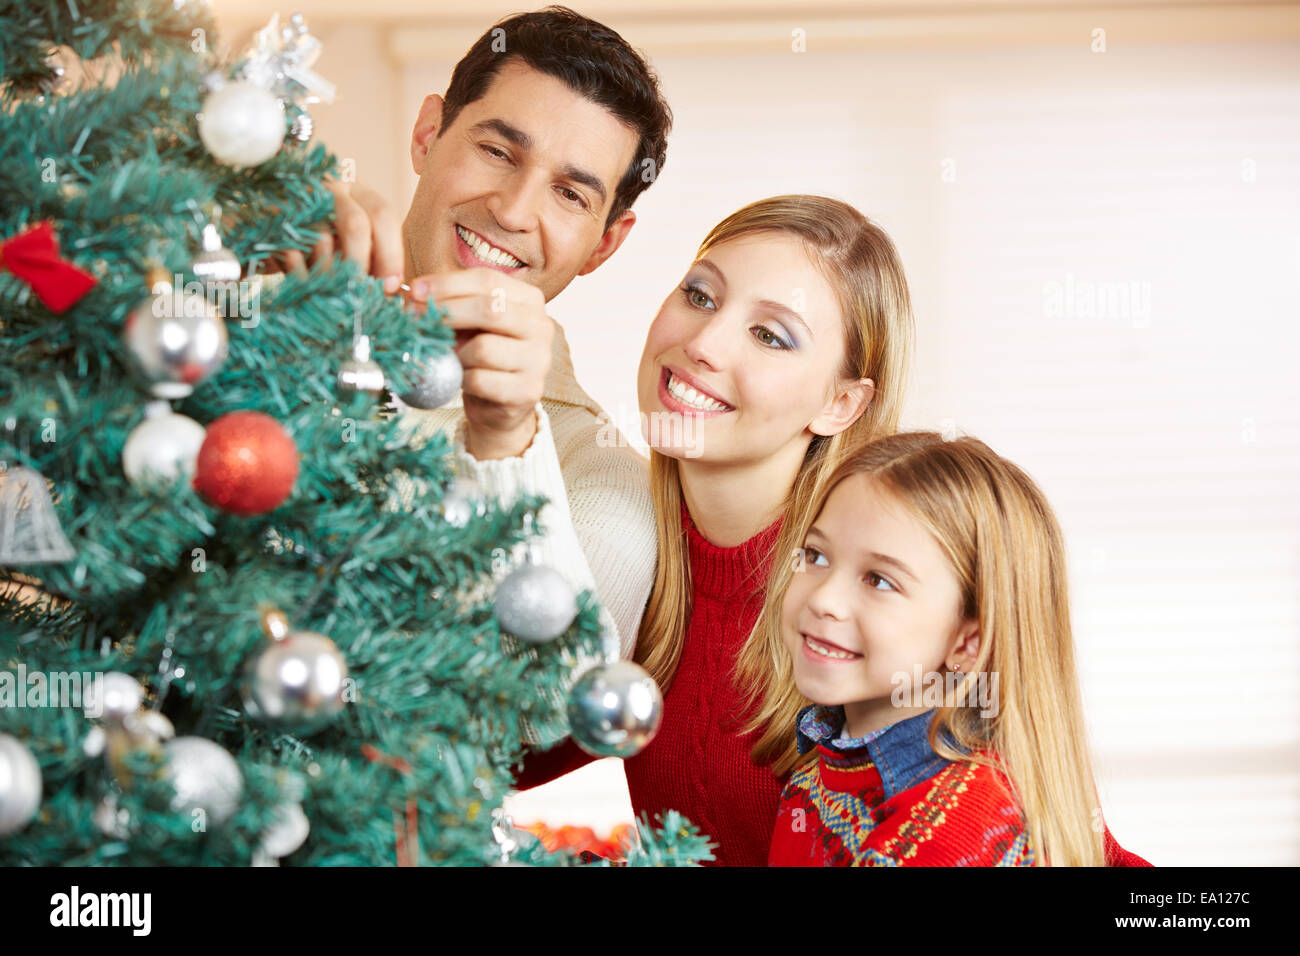 Glückliche Familie zusammen Weihnachtsbaum zu verzieren, die zu Hause Stockfoto